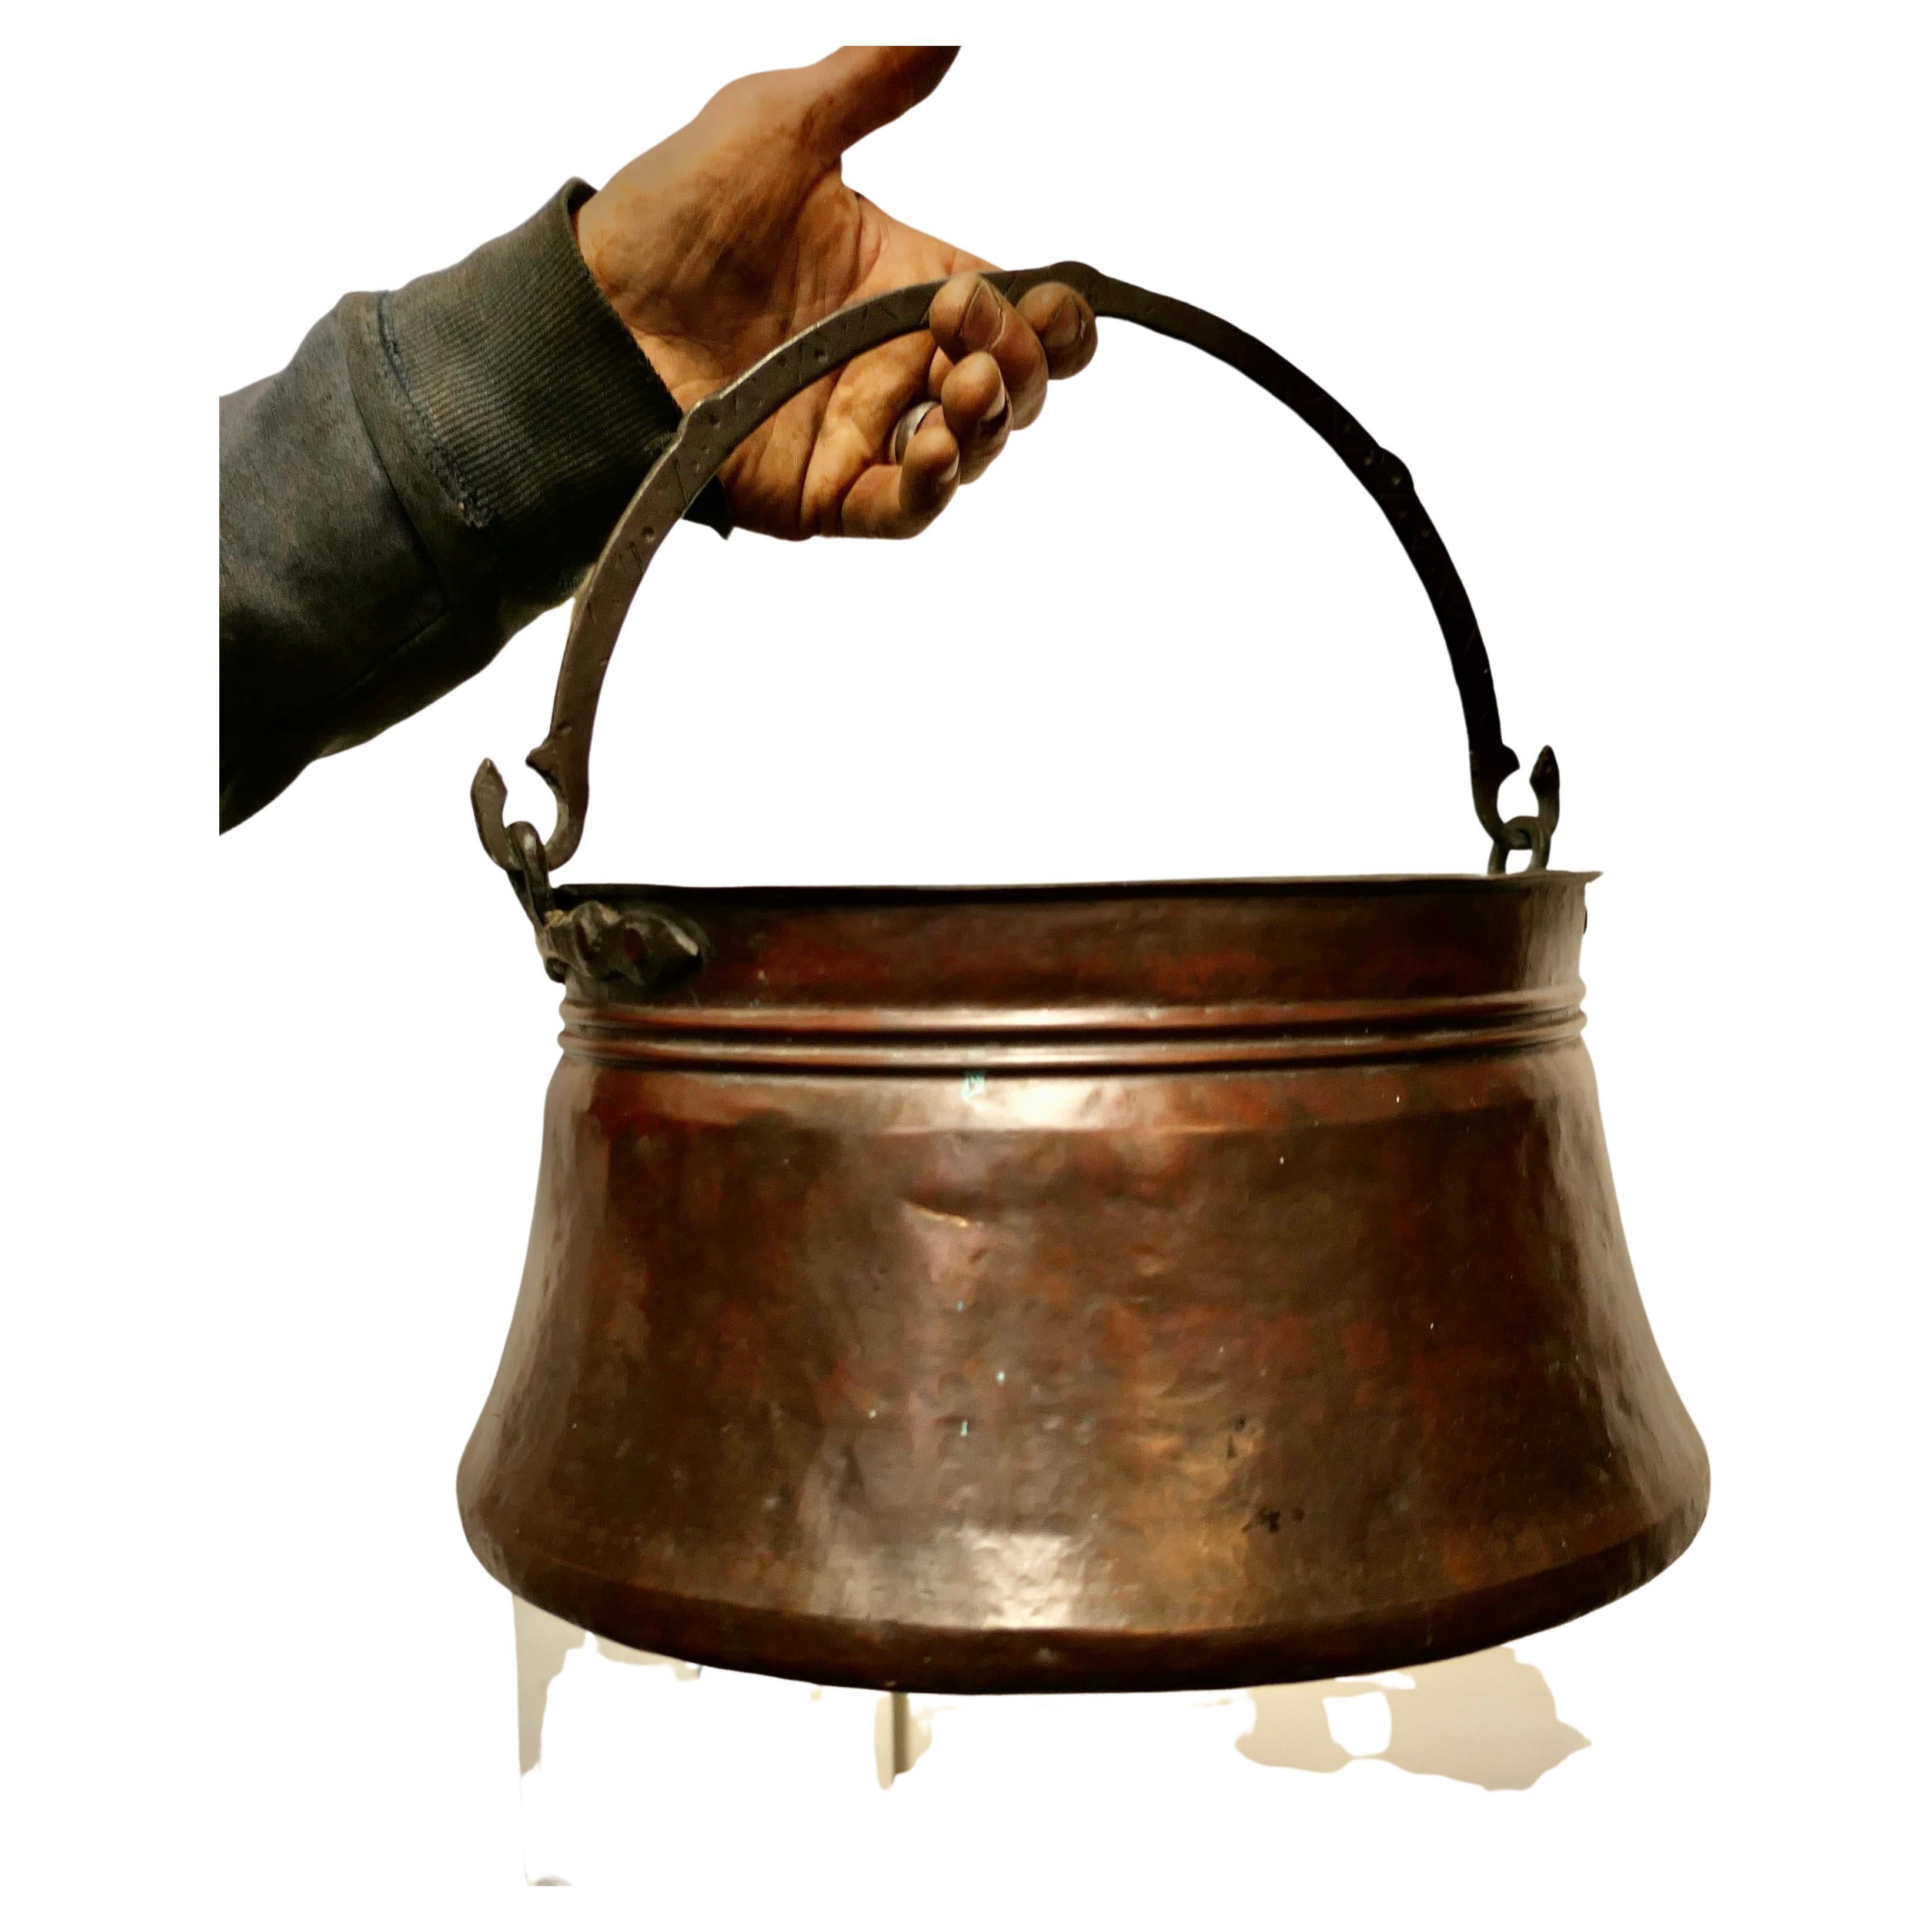  Kupfer-Keramiktopf, Kauldron, 19. Jahrhundert 

Dies ist eine schöne frühe Kochtopf, es wurde in der Hand geschlagen Kupfer Der Topf ist breiter an der Basis und hat eine gerollte oben, die Eisengriff schwingt durch 180 Grad und hat eine sehr